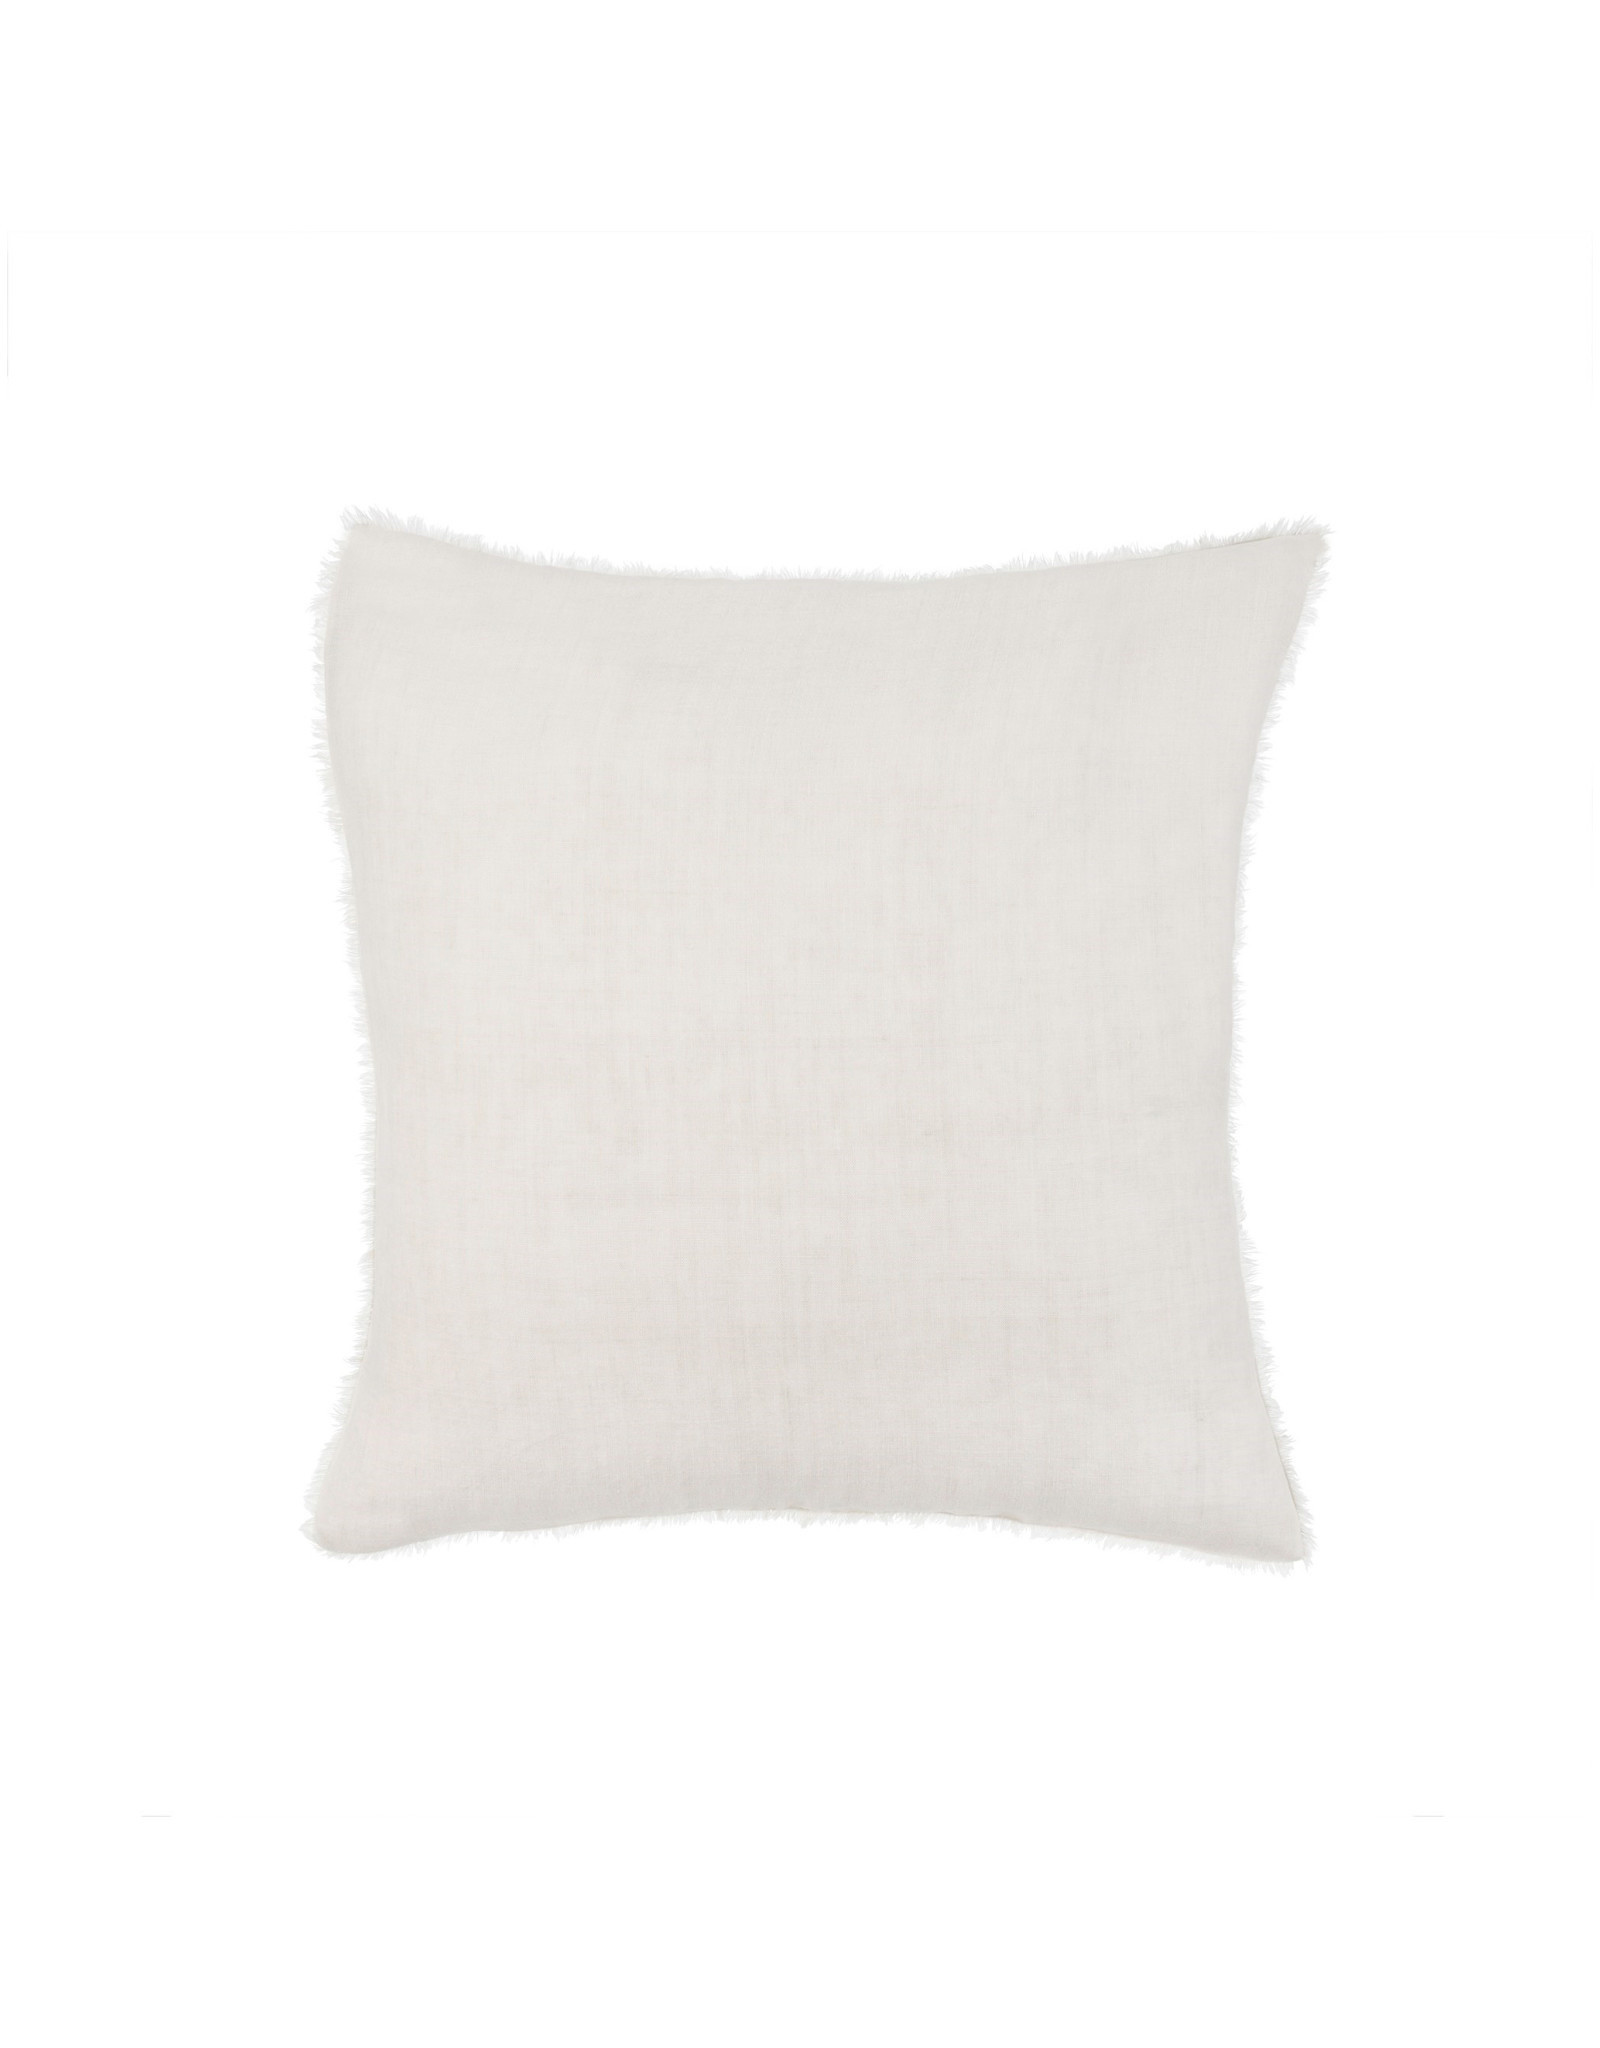 Indaba Lina Linen Pillow - Natural